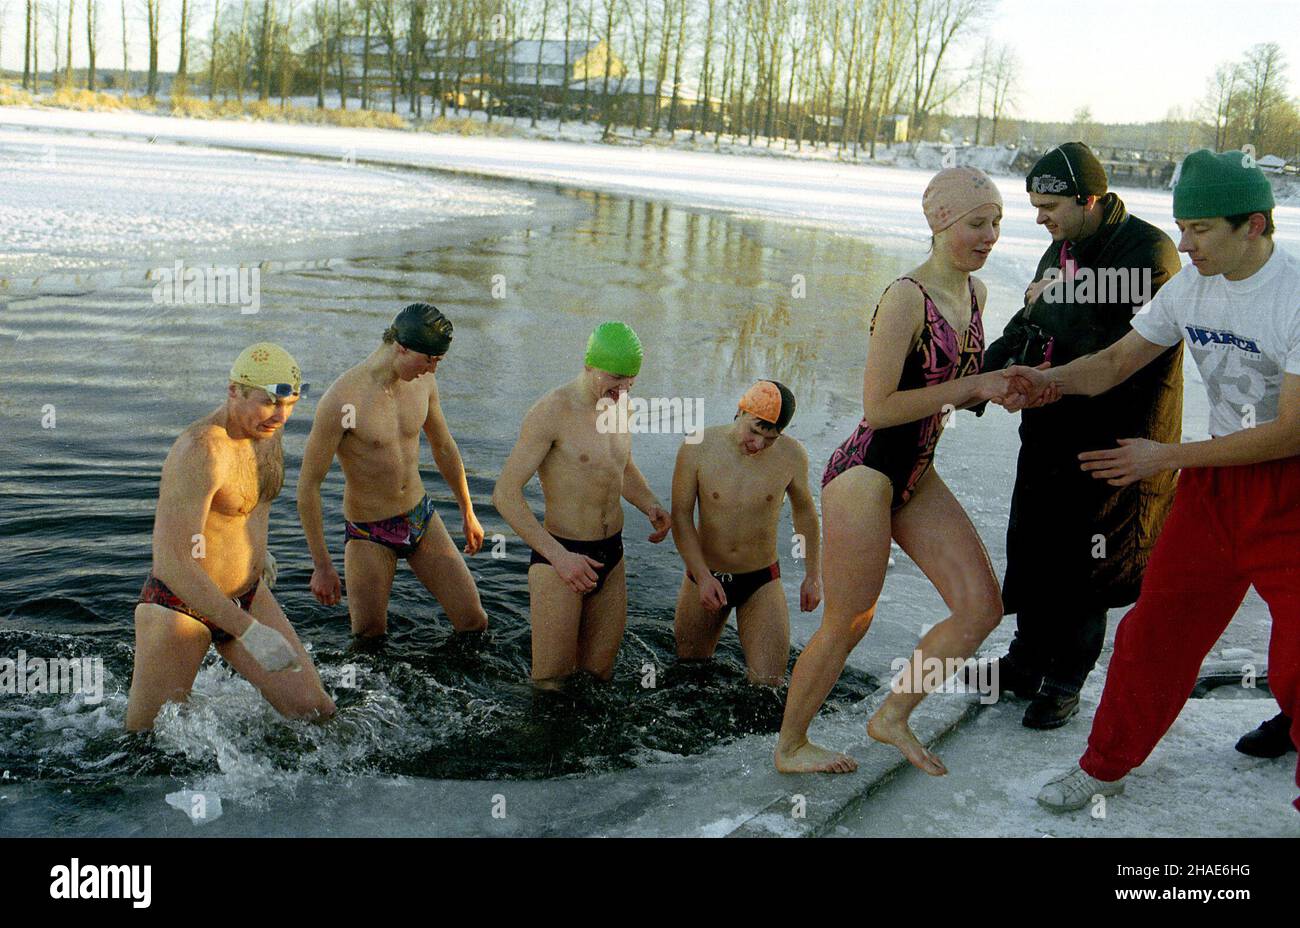 Supraœl, 31.12.1995. K¹piel bia³ostockich morsów W rzece Supraœl. (sr.) PAP/Zdzis³aw Lenkiewicz Suprasl, 31.12.1995. Walruses, un grupo de nadadores de agua fría de Bialystok durante su baño anual de invierno en el río Suprasl. (sr.) PAP/Zdzis³aw Lenkiewicz Foto de stock